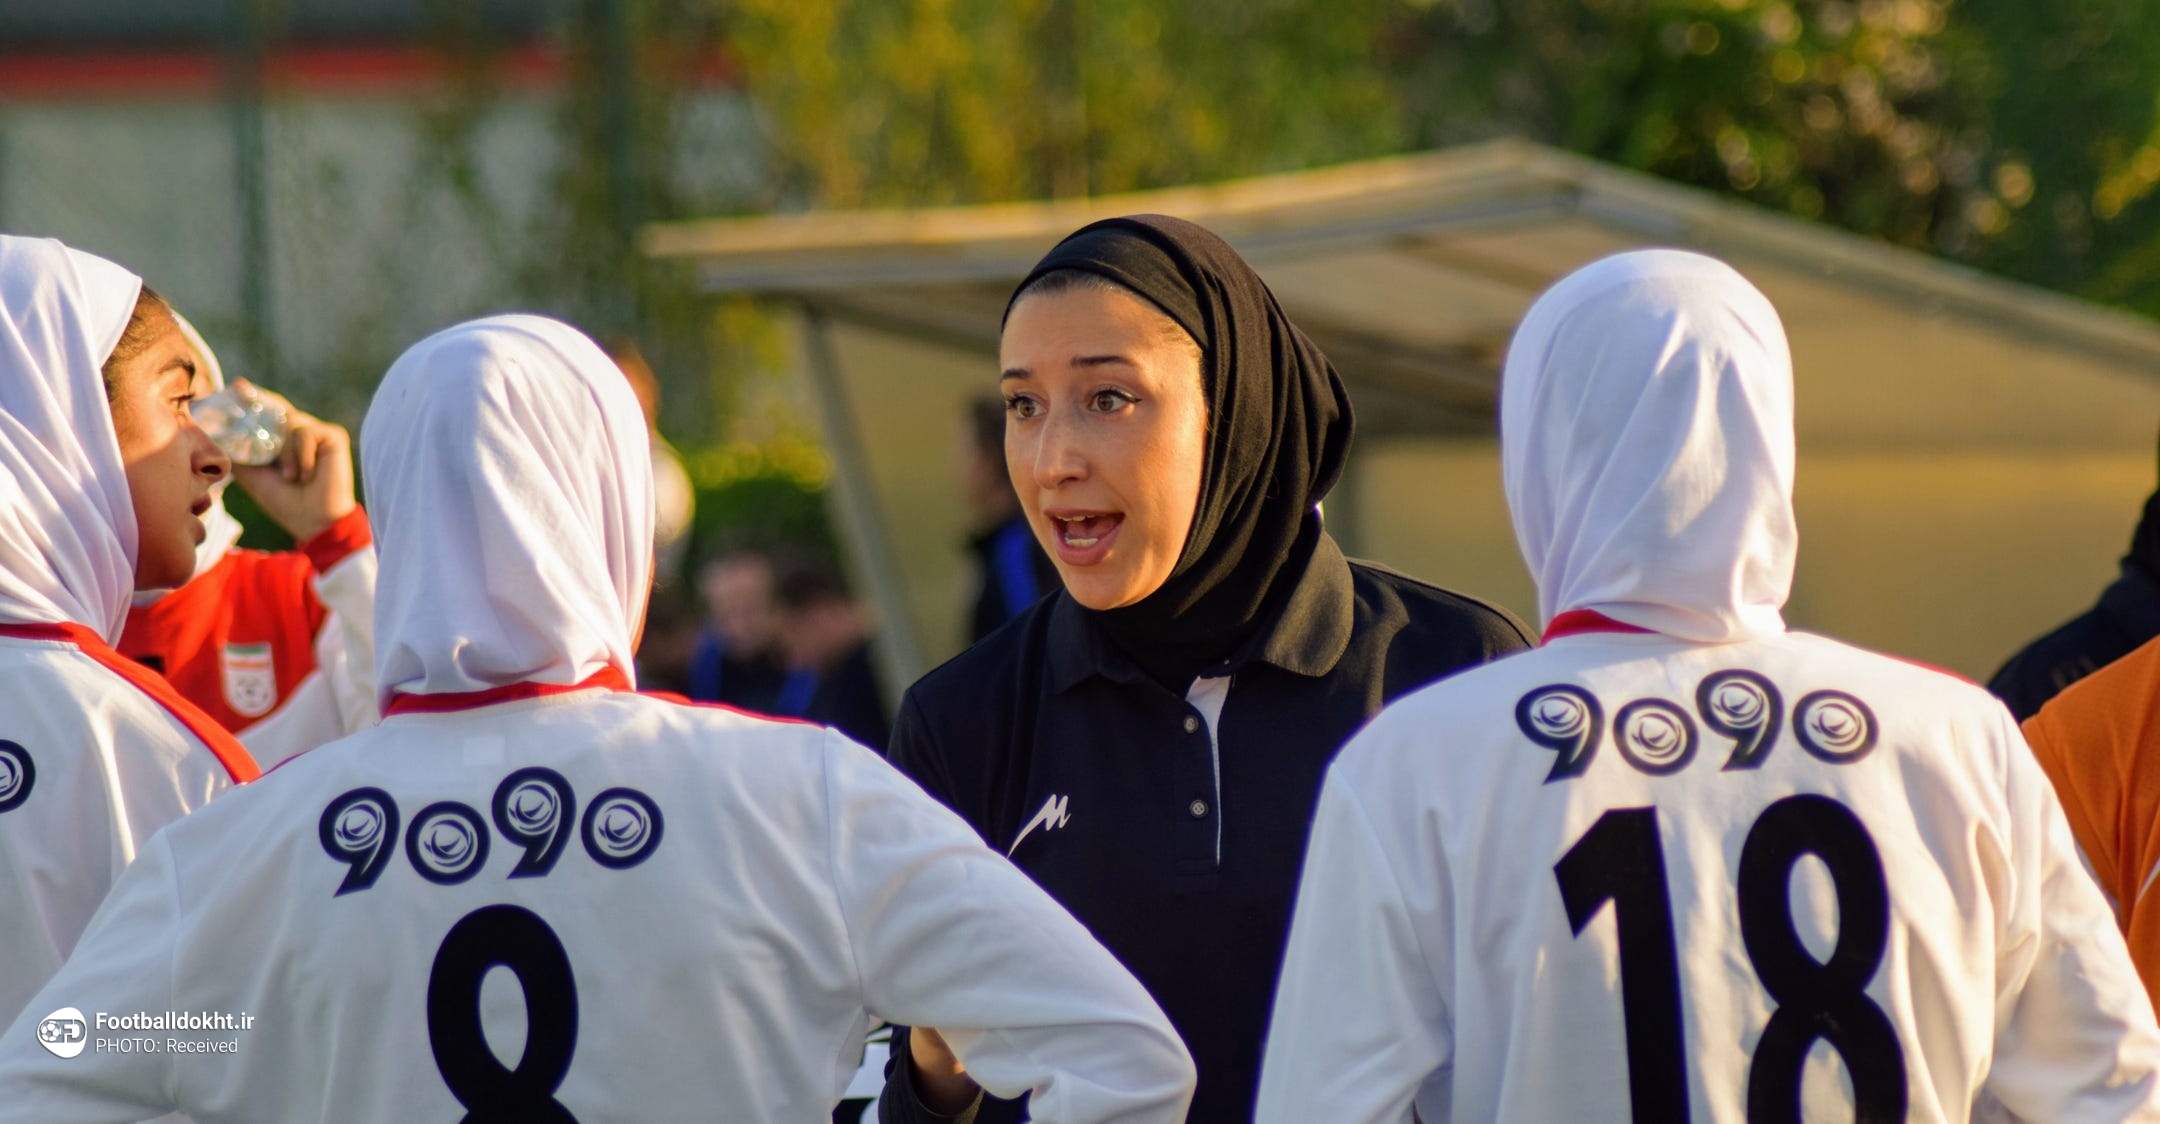 واکنش سرمربی تیم ملی زنان ایران به نامه عجیب اردن؛ شرم آور است!